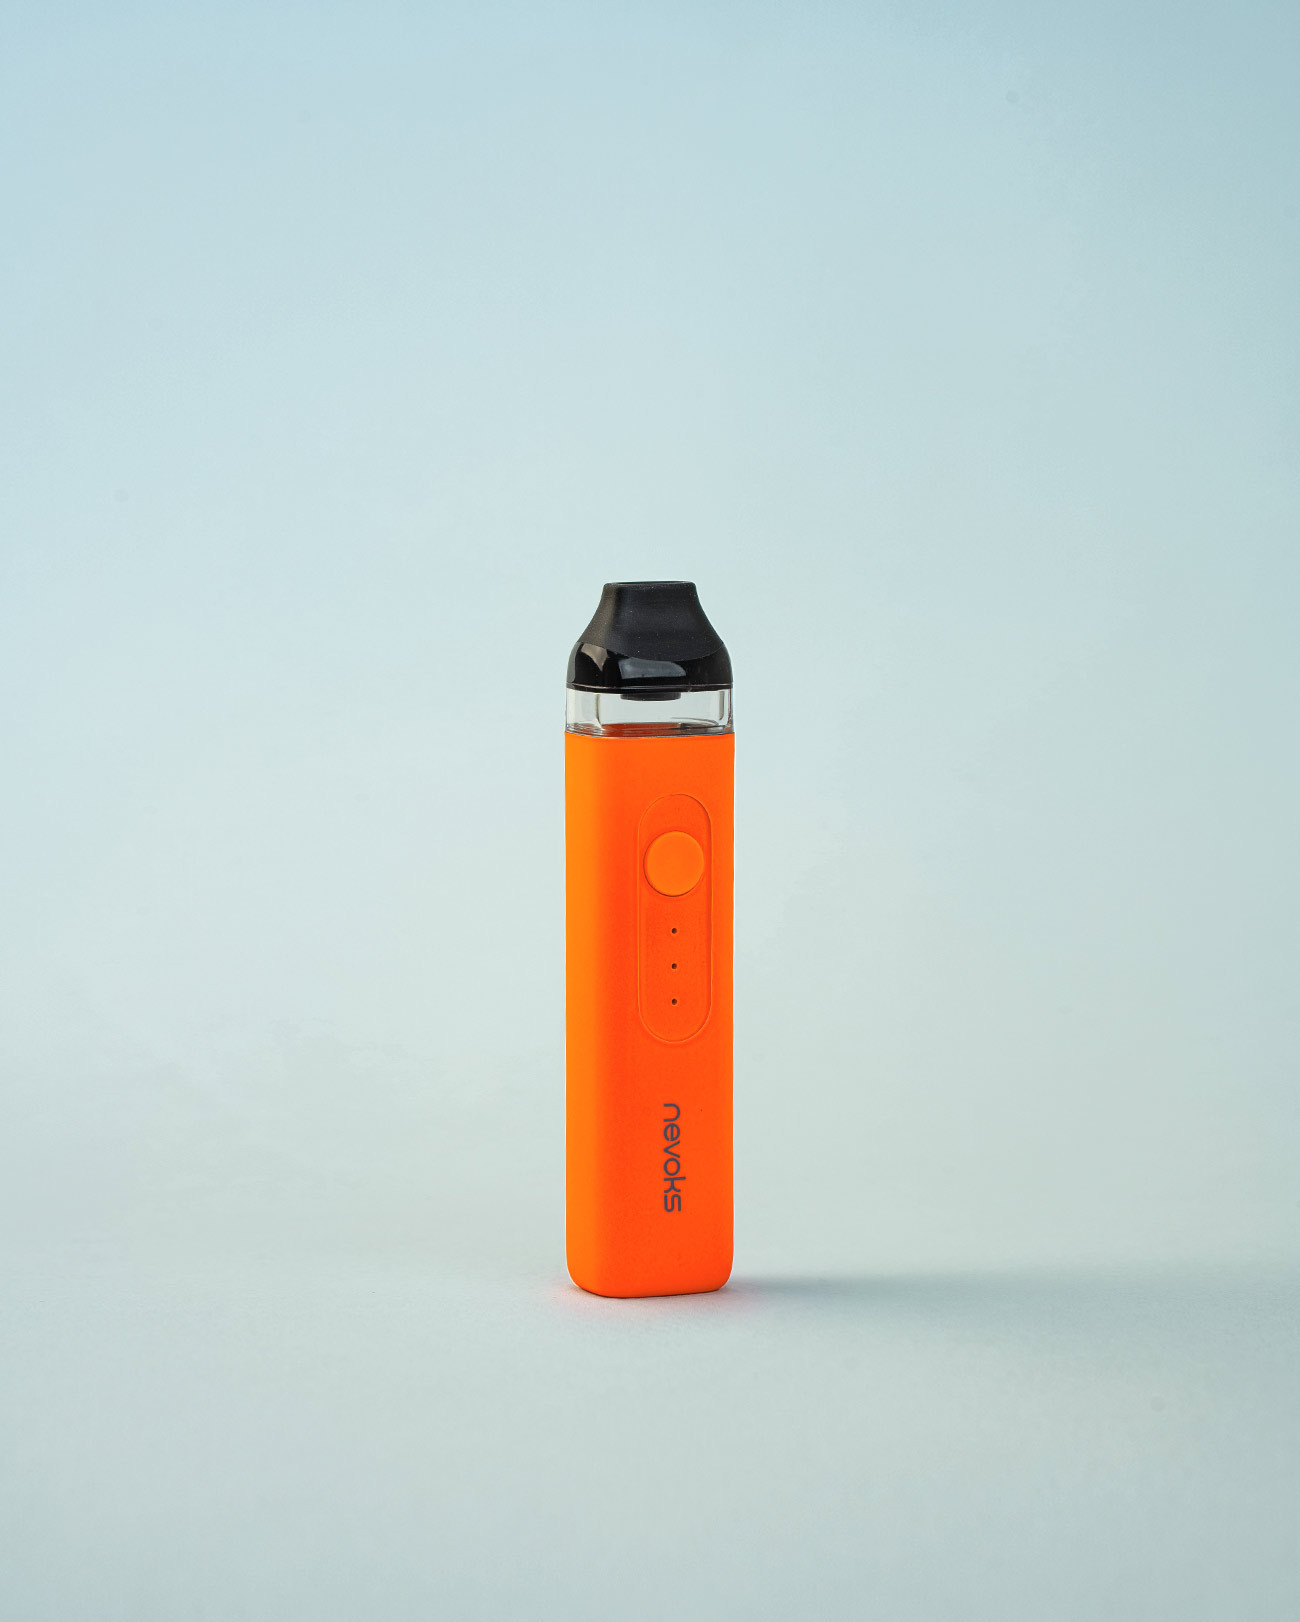 Kit pod Feelin couleur orange fluo par Nevoks